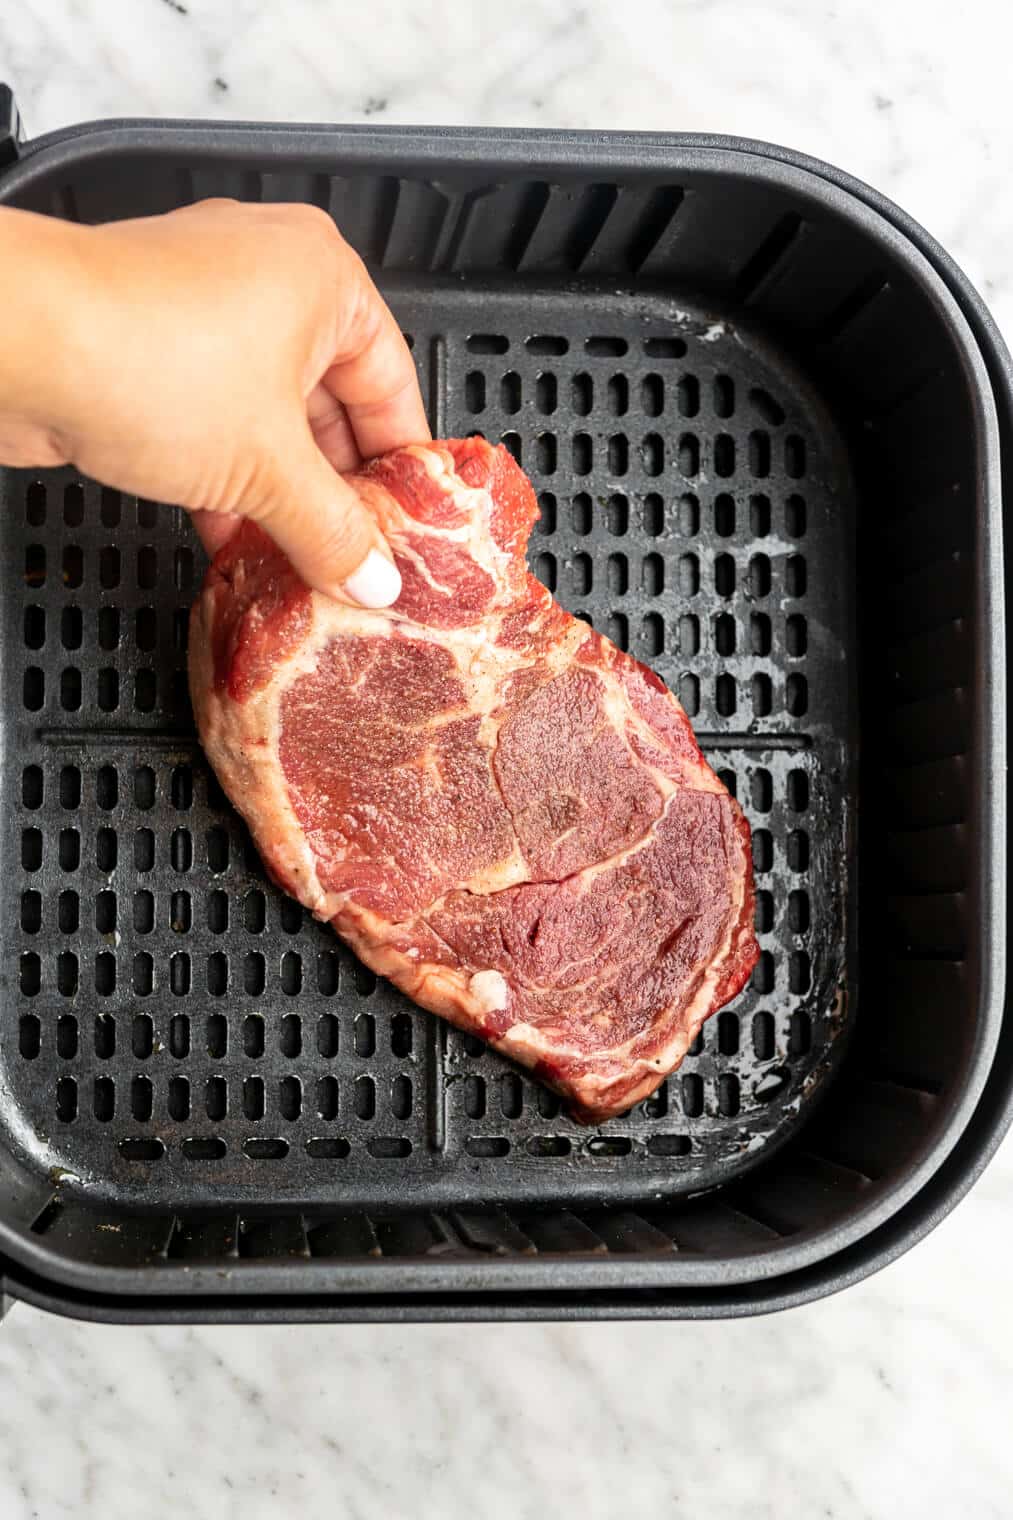 Ribeye steak being placed in basket of air fryer.